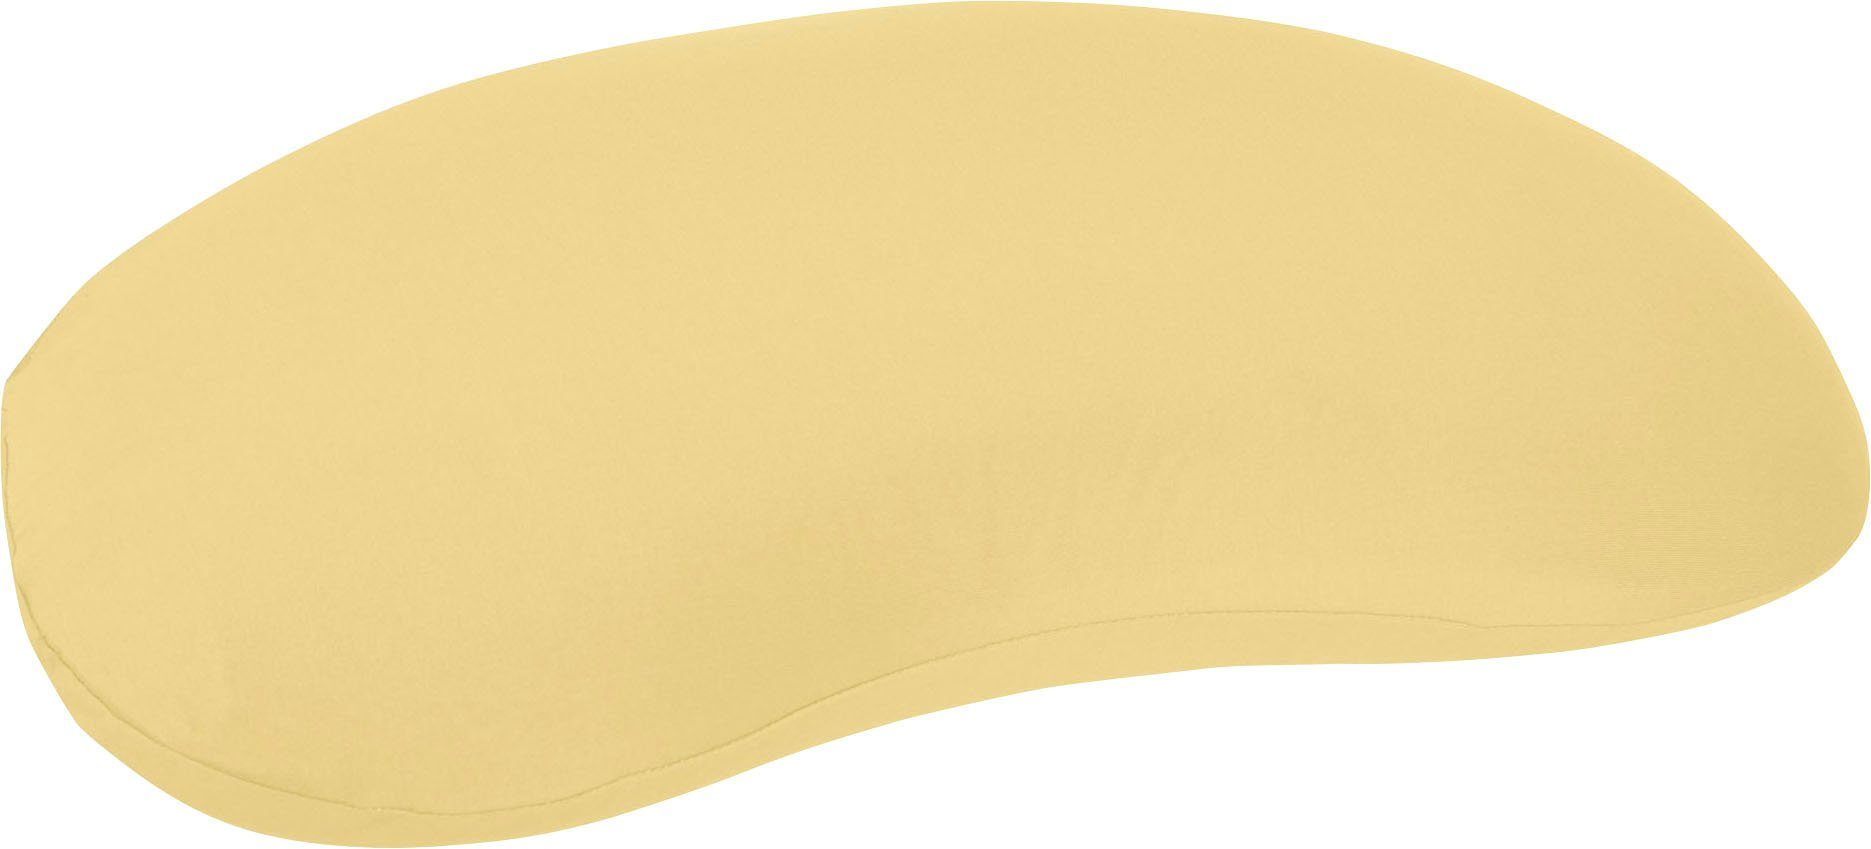 Kissenbezug Sonata Edel-Zwirn-Jersey, gelb Kneer passend Sonata-Kissen (1 Stück), für das